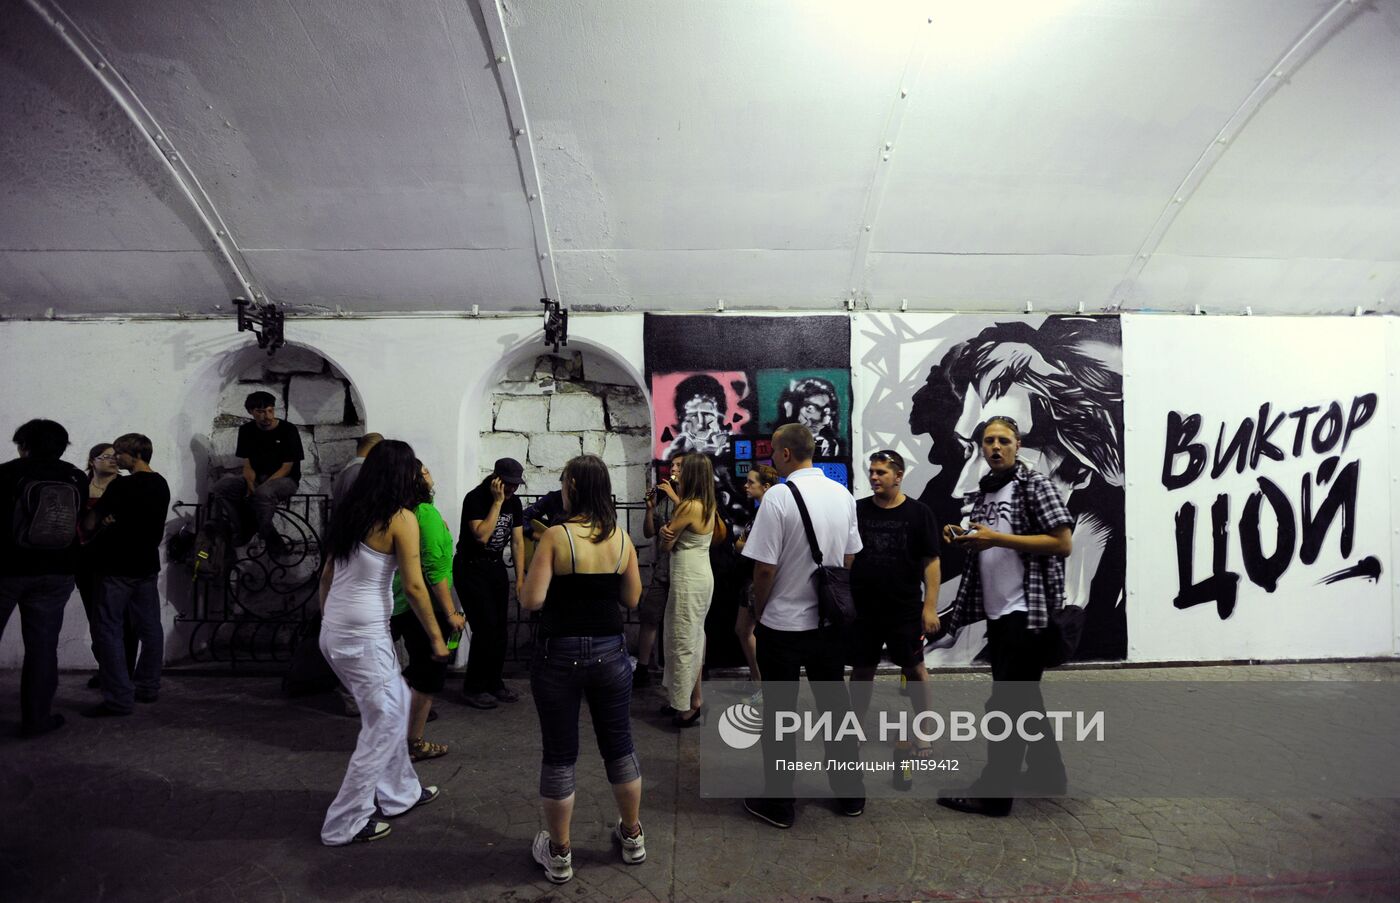 Открытие стены Виктора Цоя в Екатеринбурге